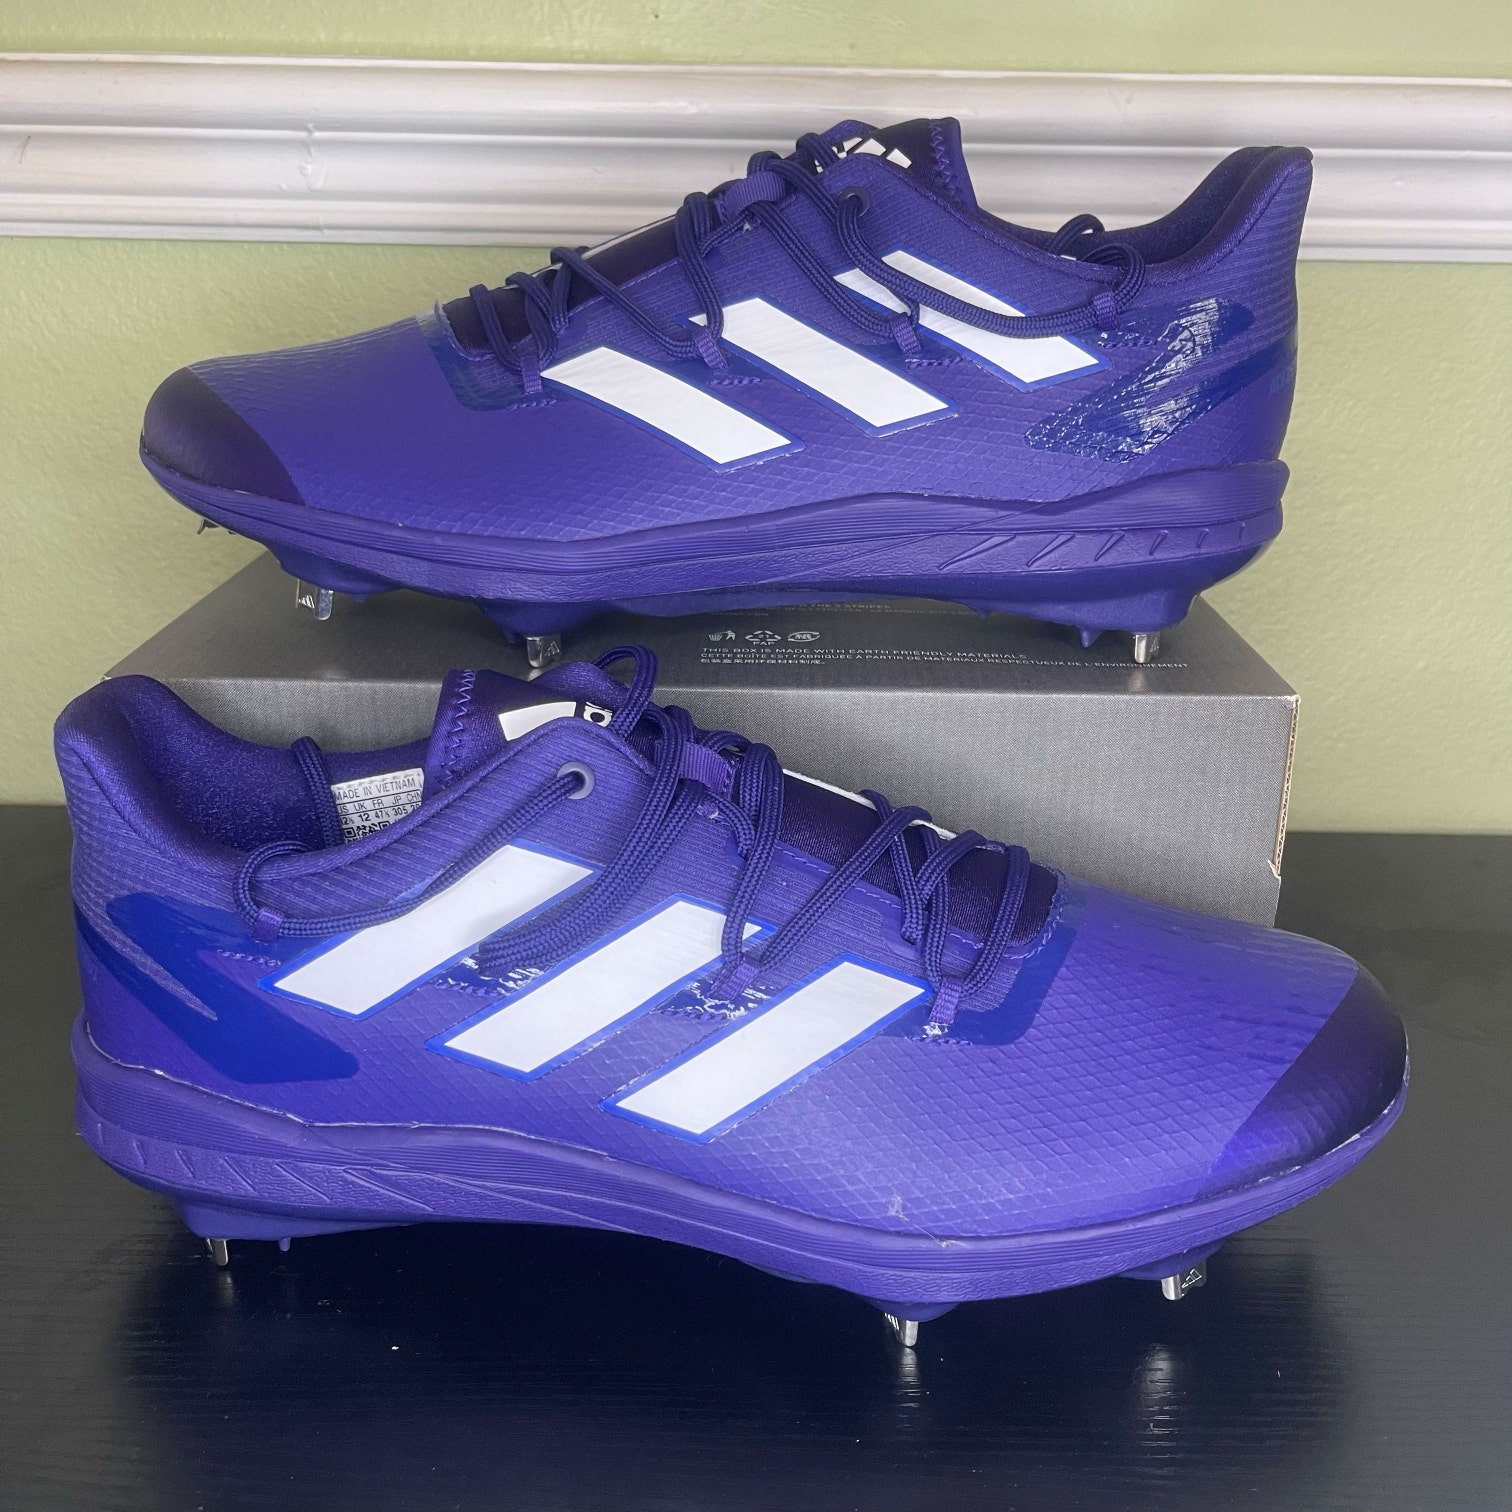 Adidas Adizero Afterburner 8 Metal Baseball Cleats Size 9 Purple White H00980